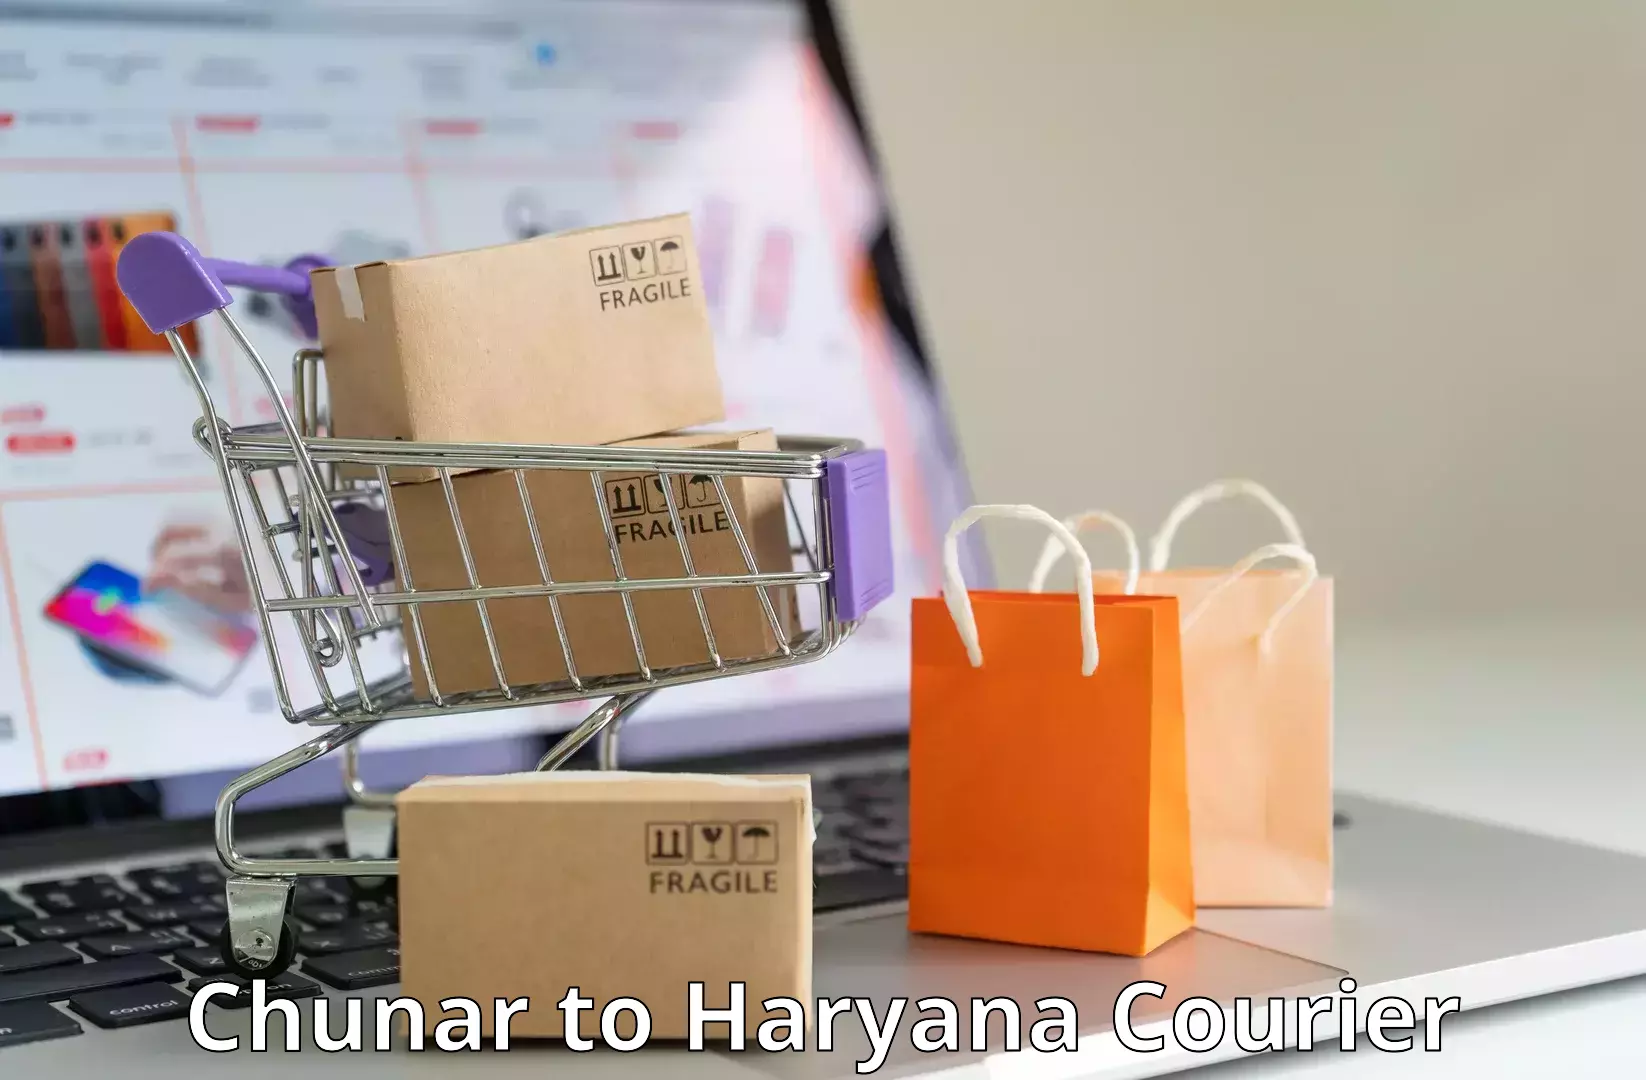 Customized shipping options in Chunar to Yamuna Nagar